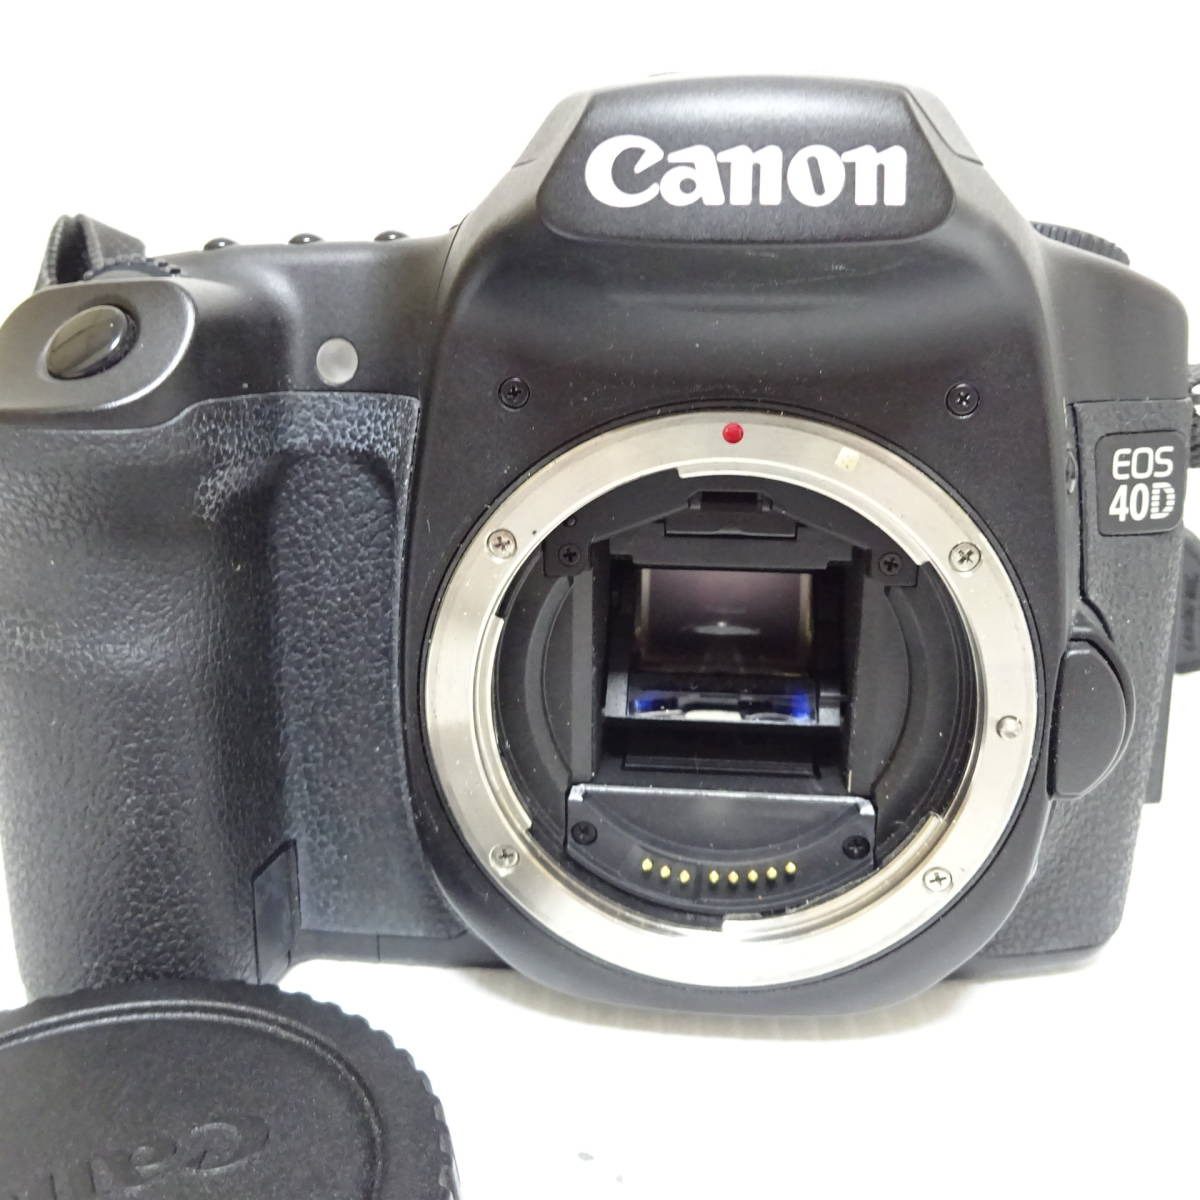 キヤノン EOS 20D レンズセット 一眼レフカメラ 純正 充電器付き-